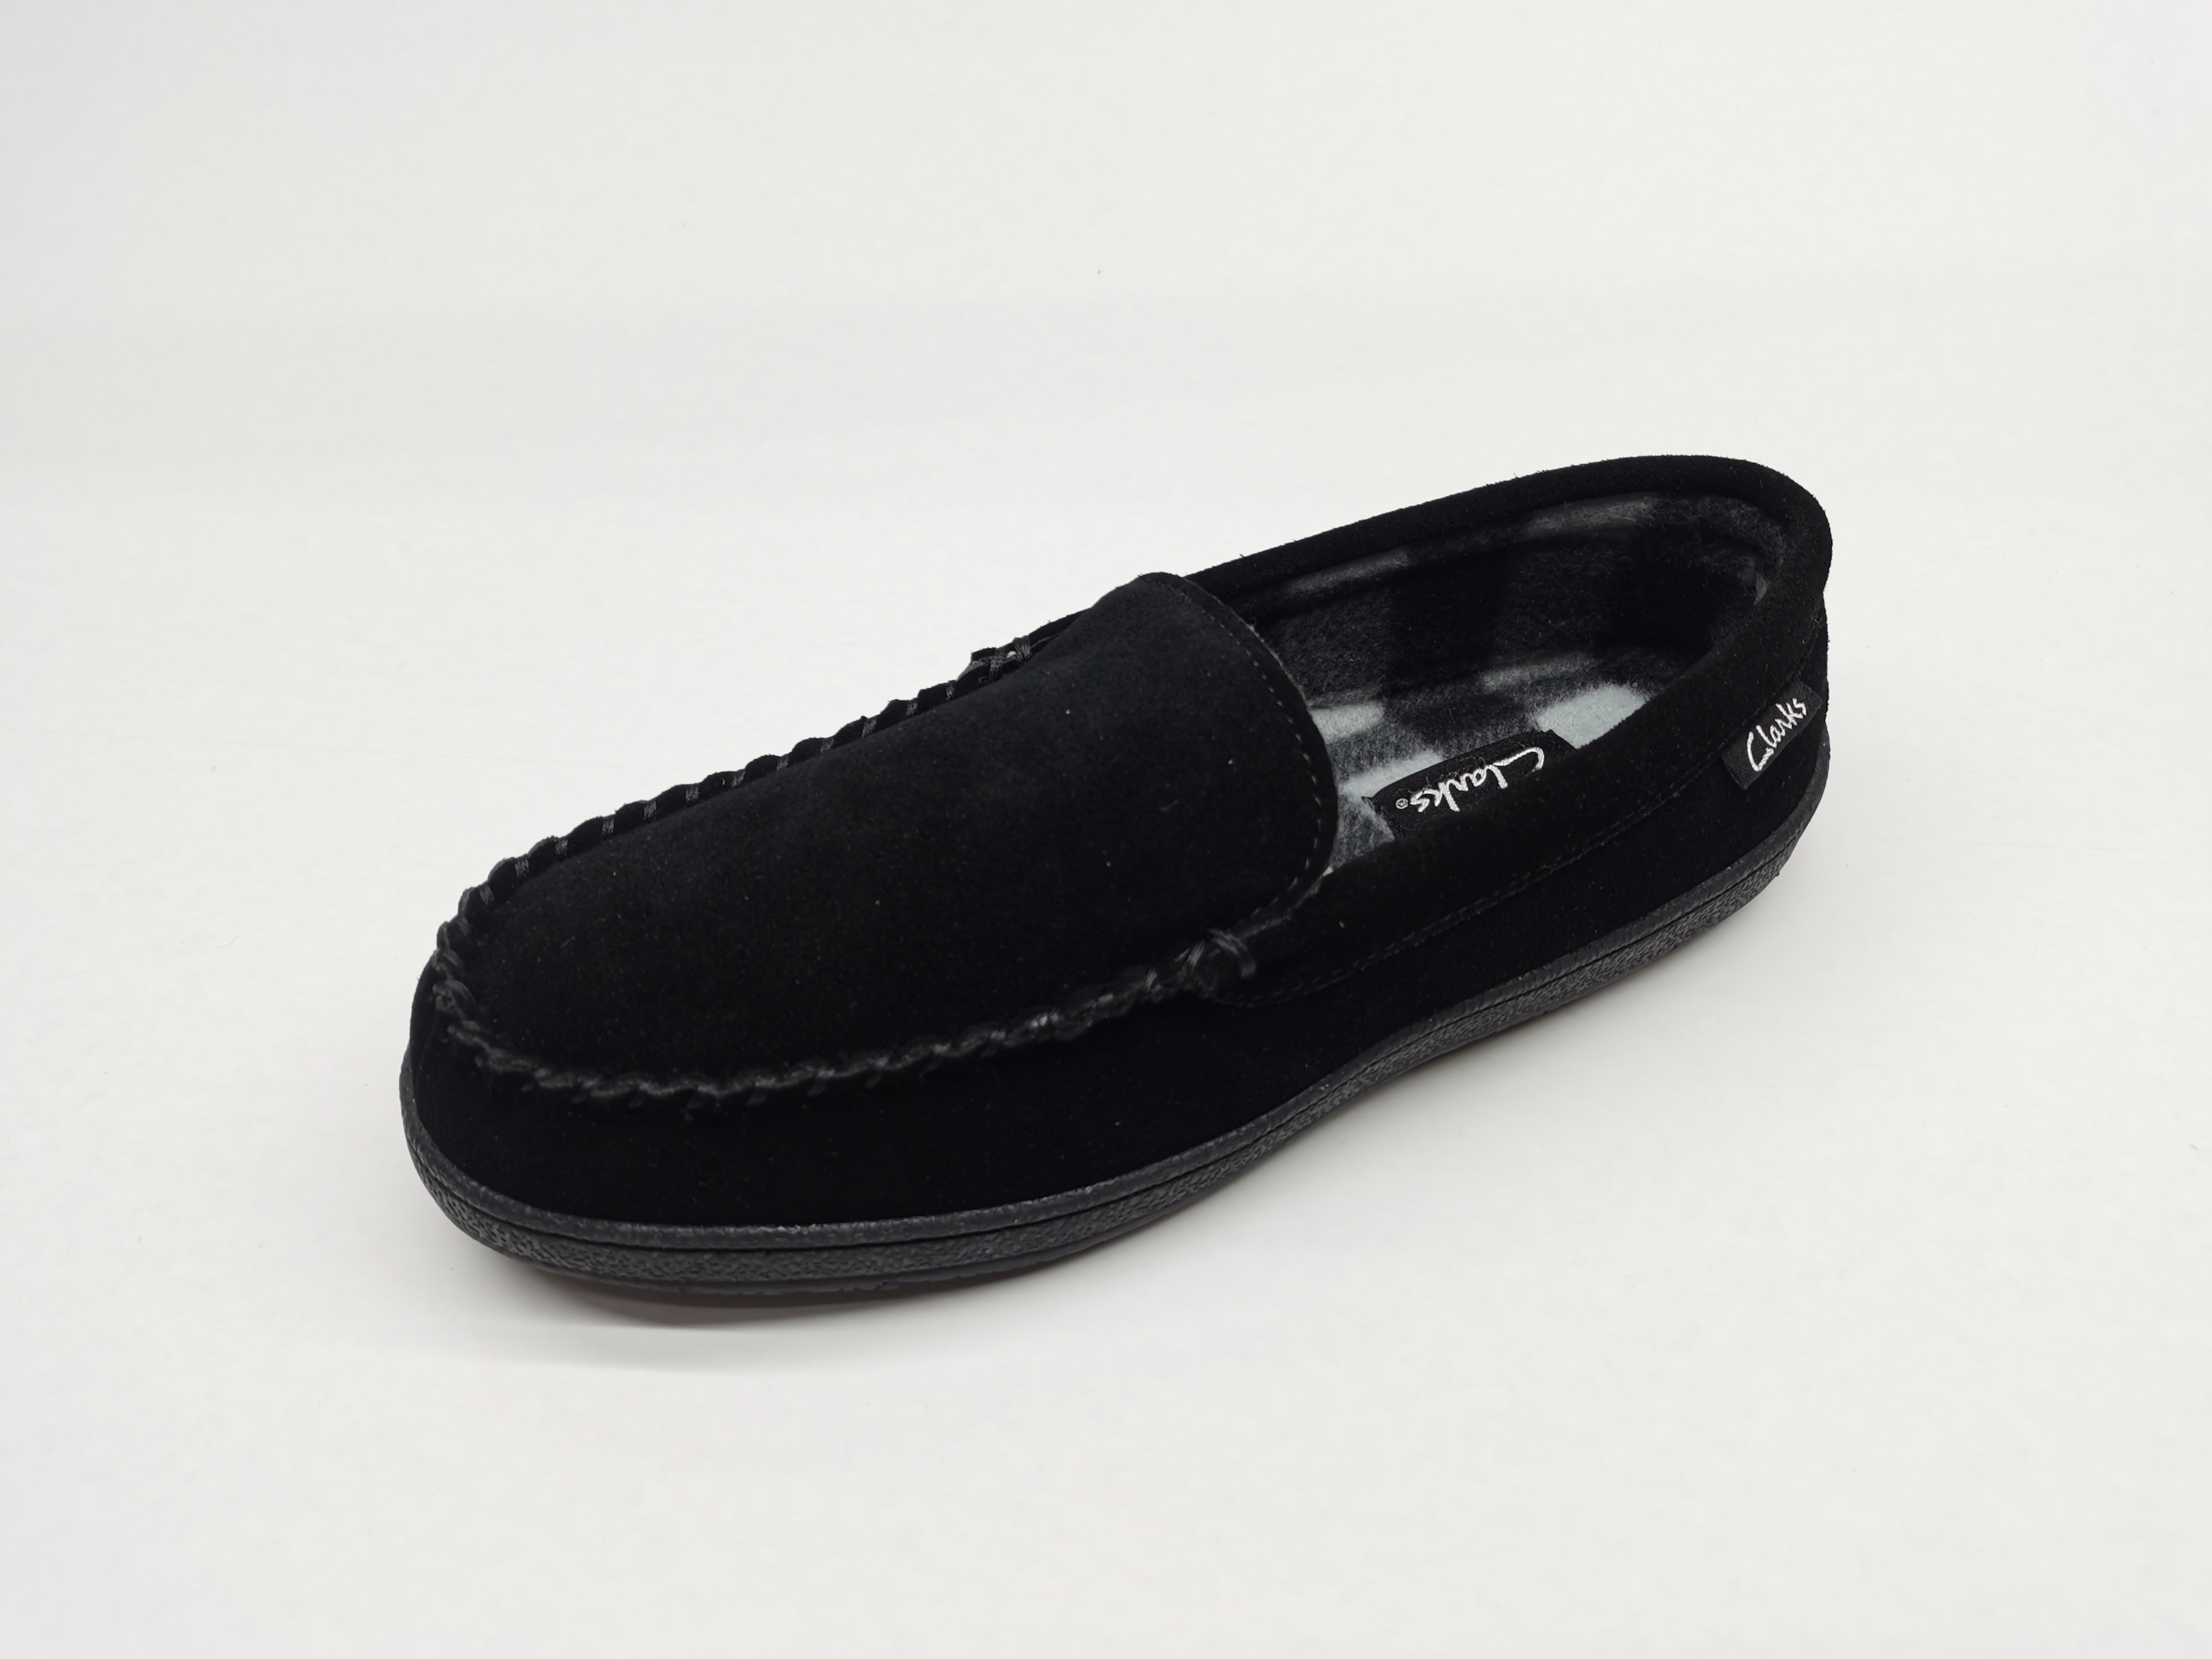 Men's Moccasin Slipper House Shoe with Indoor Outdoor Memory Foam Sole